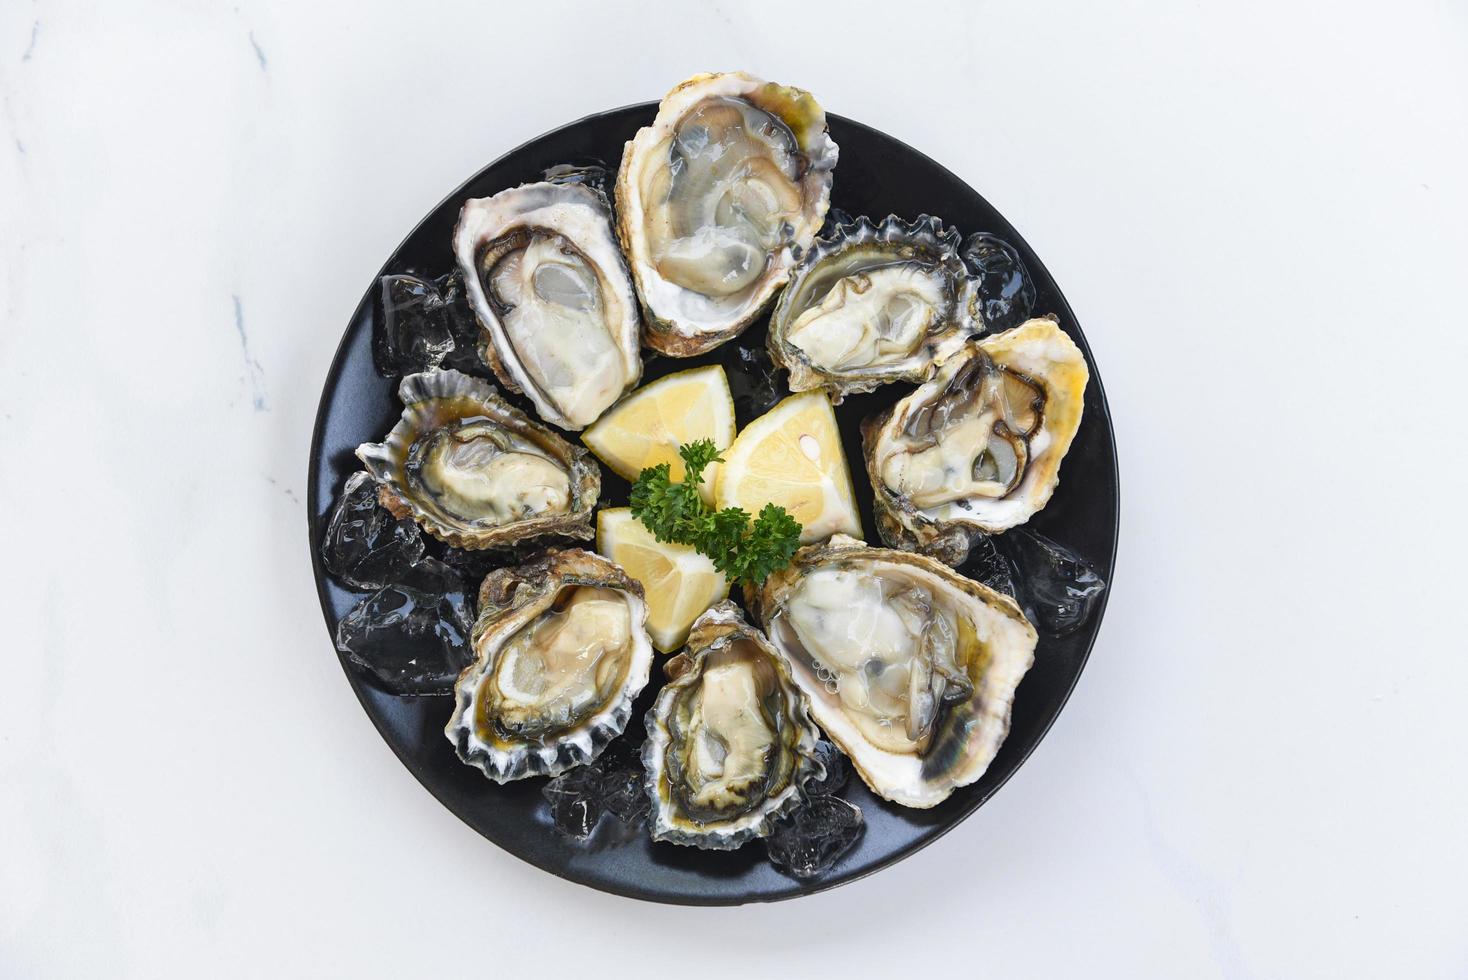 verse oesters zeevruchten op een zwarte plaat achtergrond - open oesterschelp met kruidenkruiden citroen rozemarijn geserveerd tafel en ijs gezonde zeevruchten rauwe oester diner in het restaurant gastronomische gerechten foto